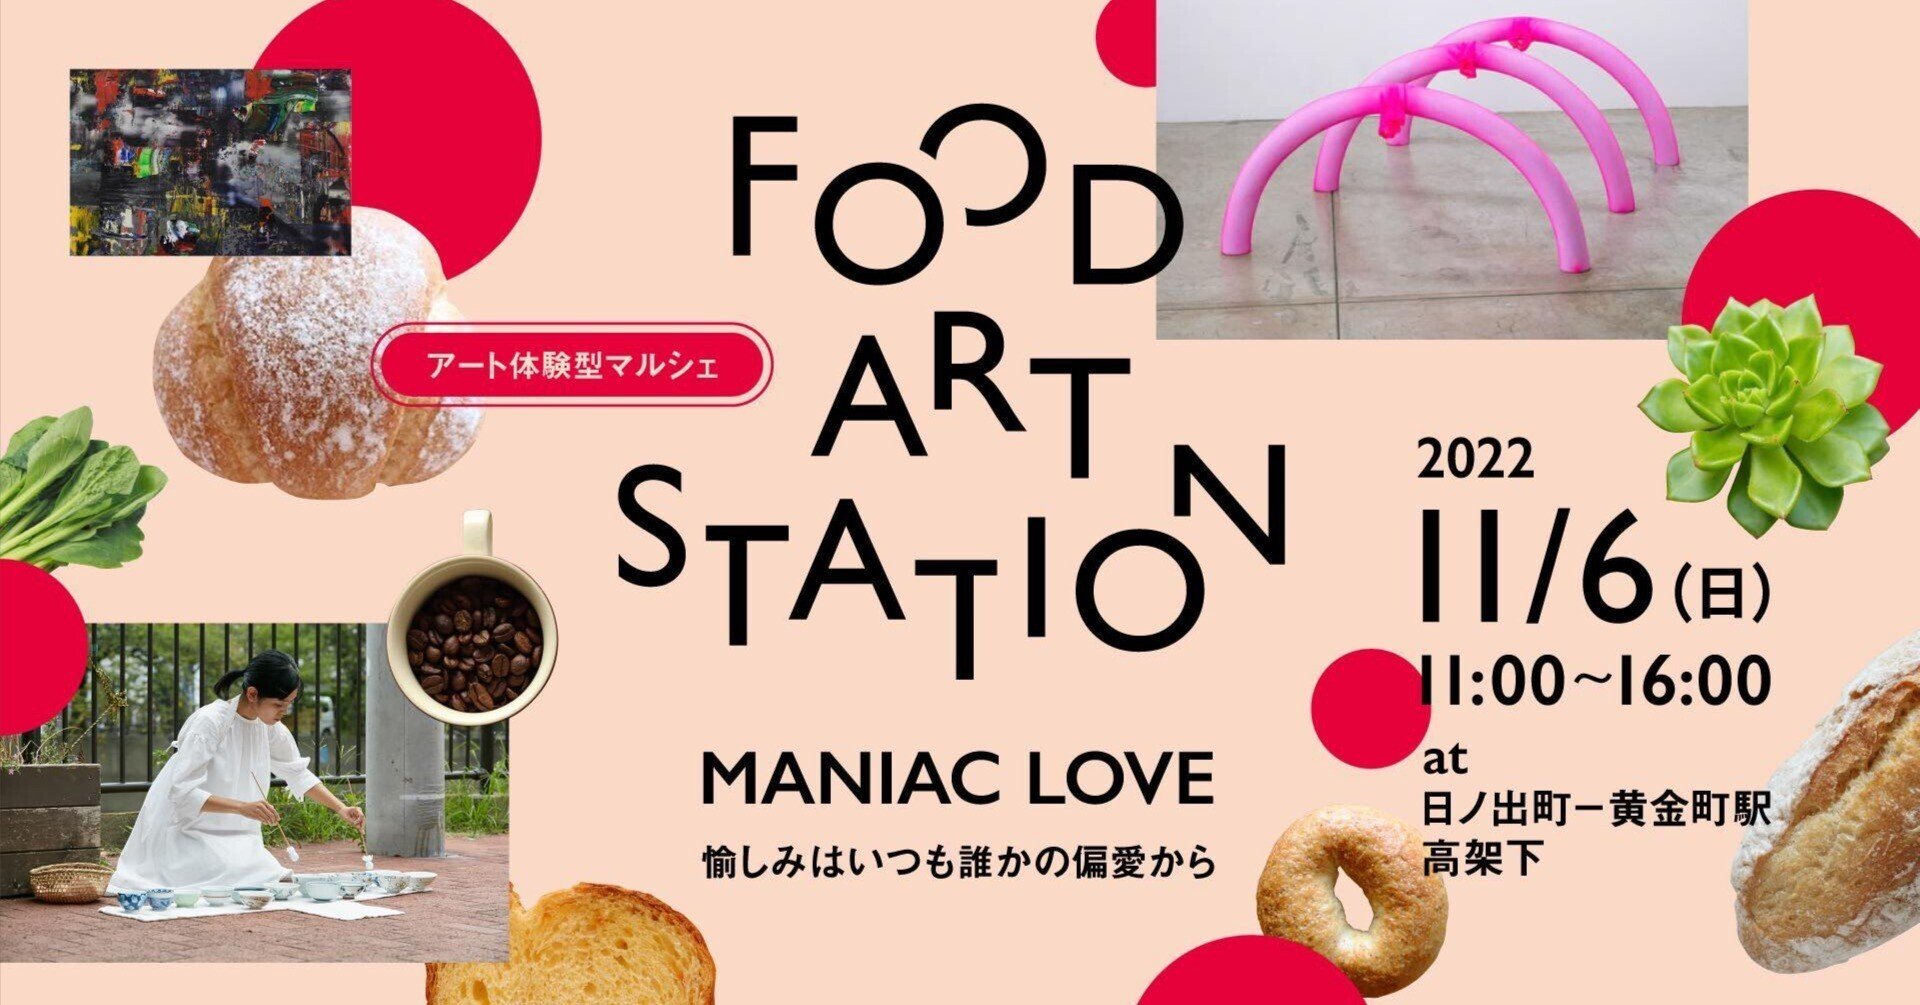 ..6 アート体験型マルシェ FOOD ART STATION ”MANIAC LOVE